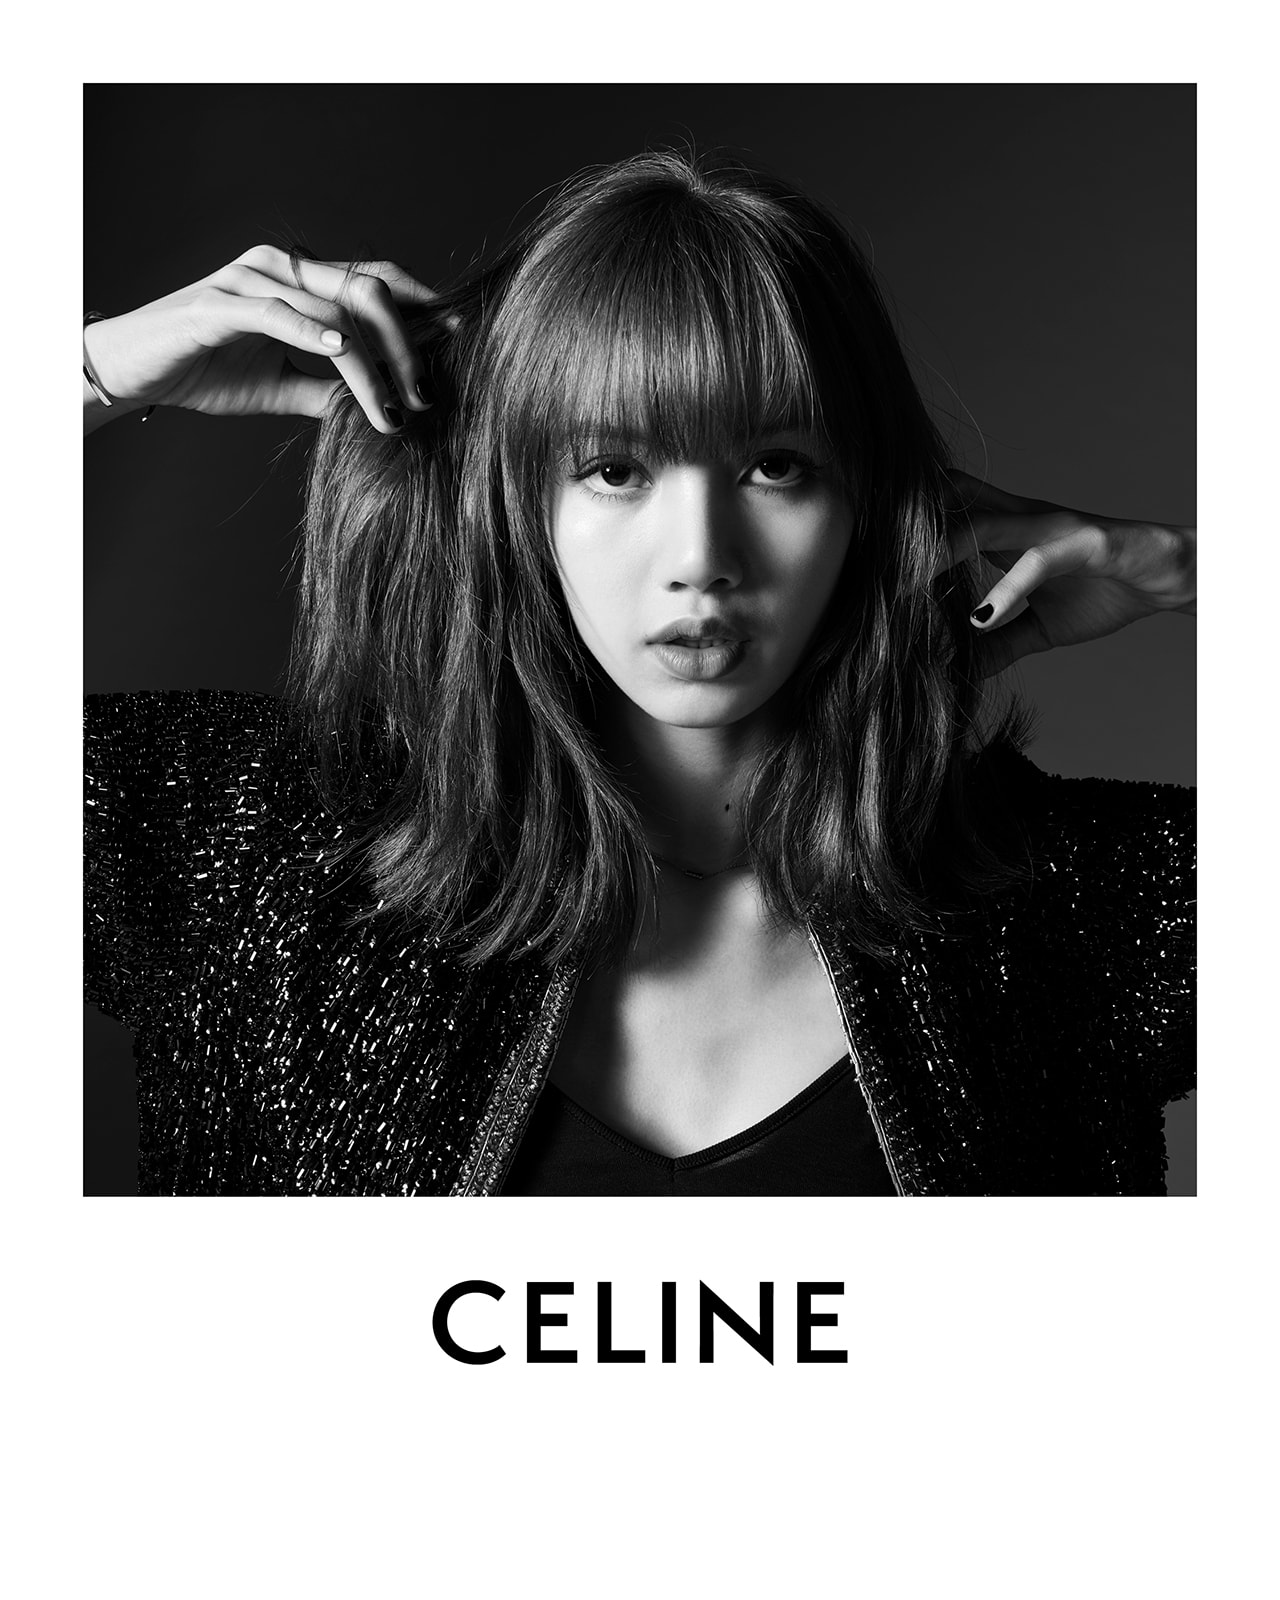 BTS' V Confirmed as CELINE's Brand Ambassador